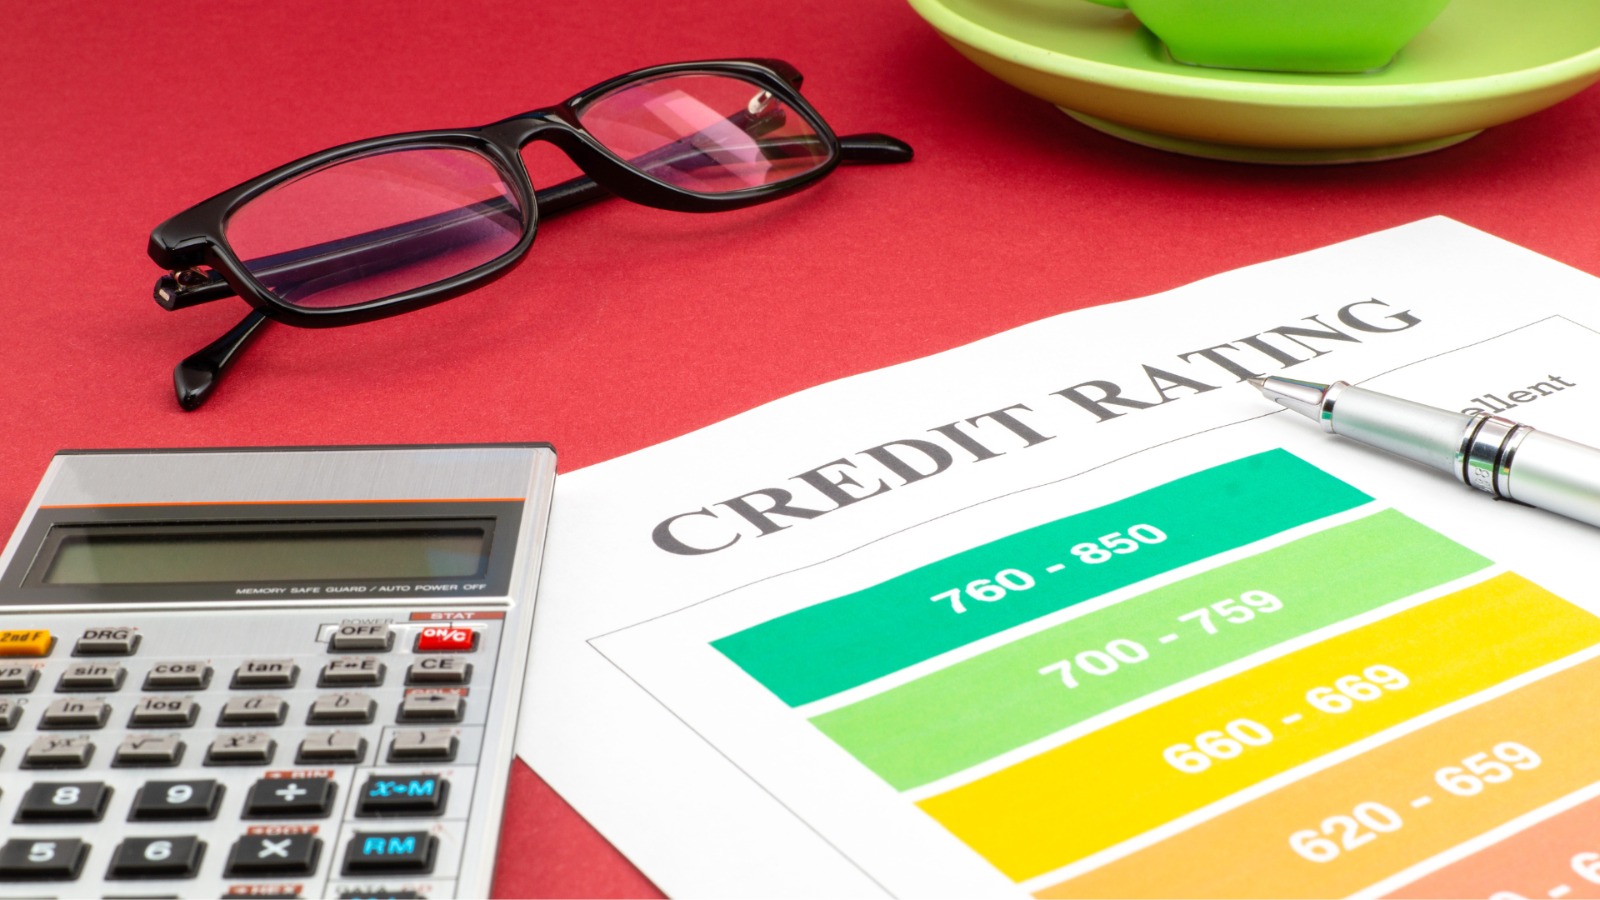 Rating de crédito: o que é e por que ficar atento ao investir?